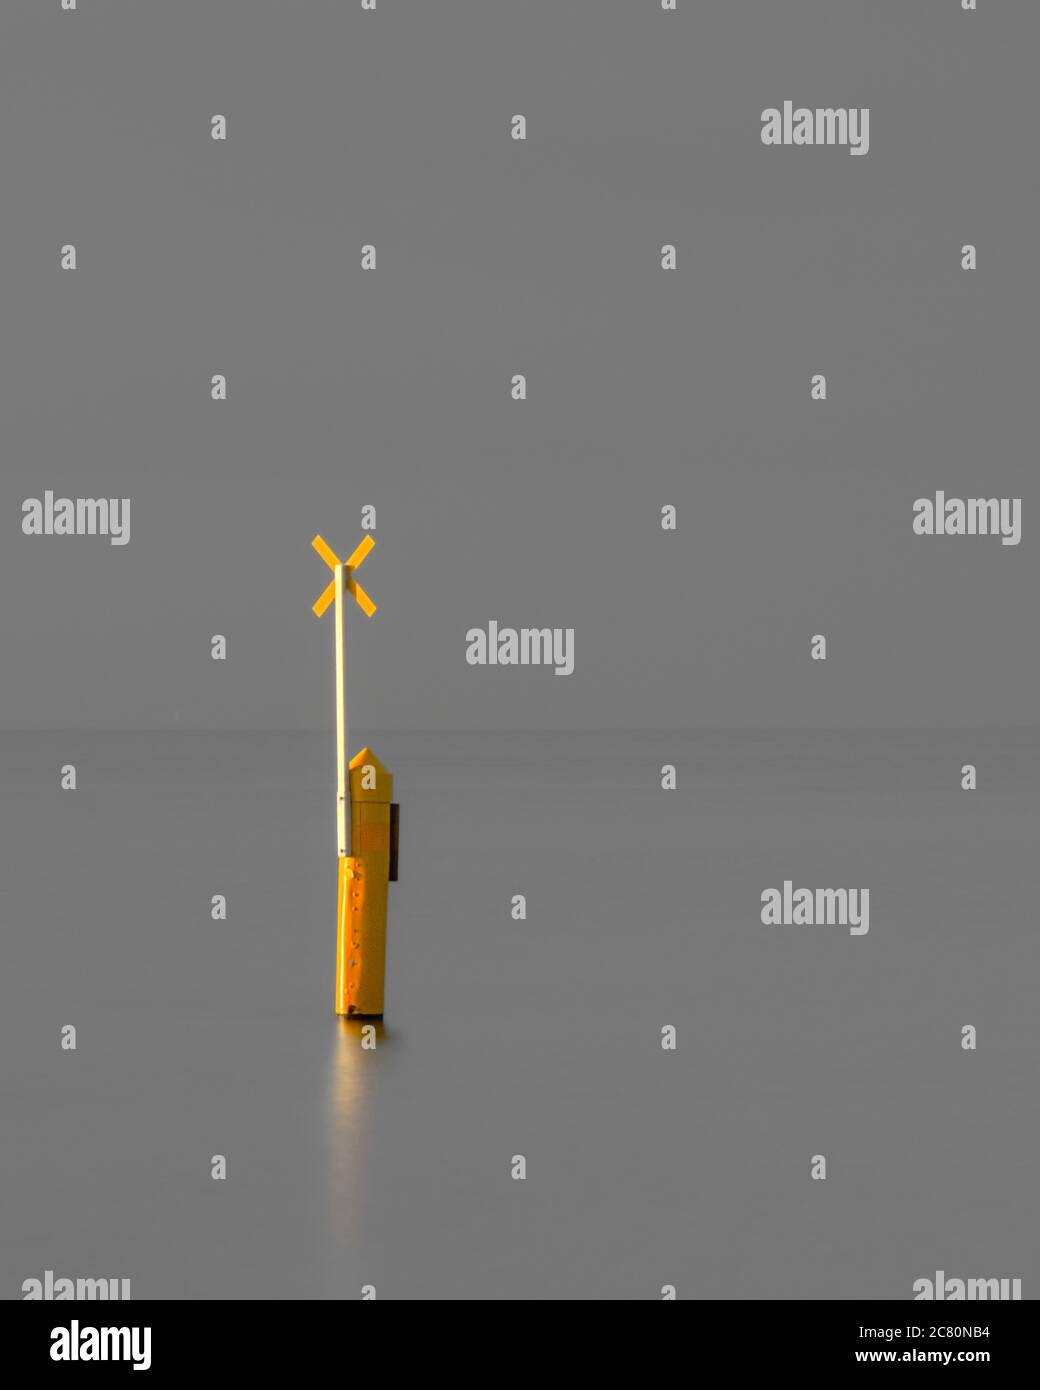 Yellow navigation marker minimalism Stock Photo